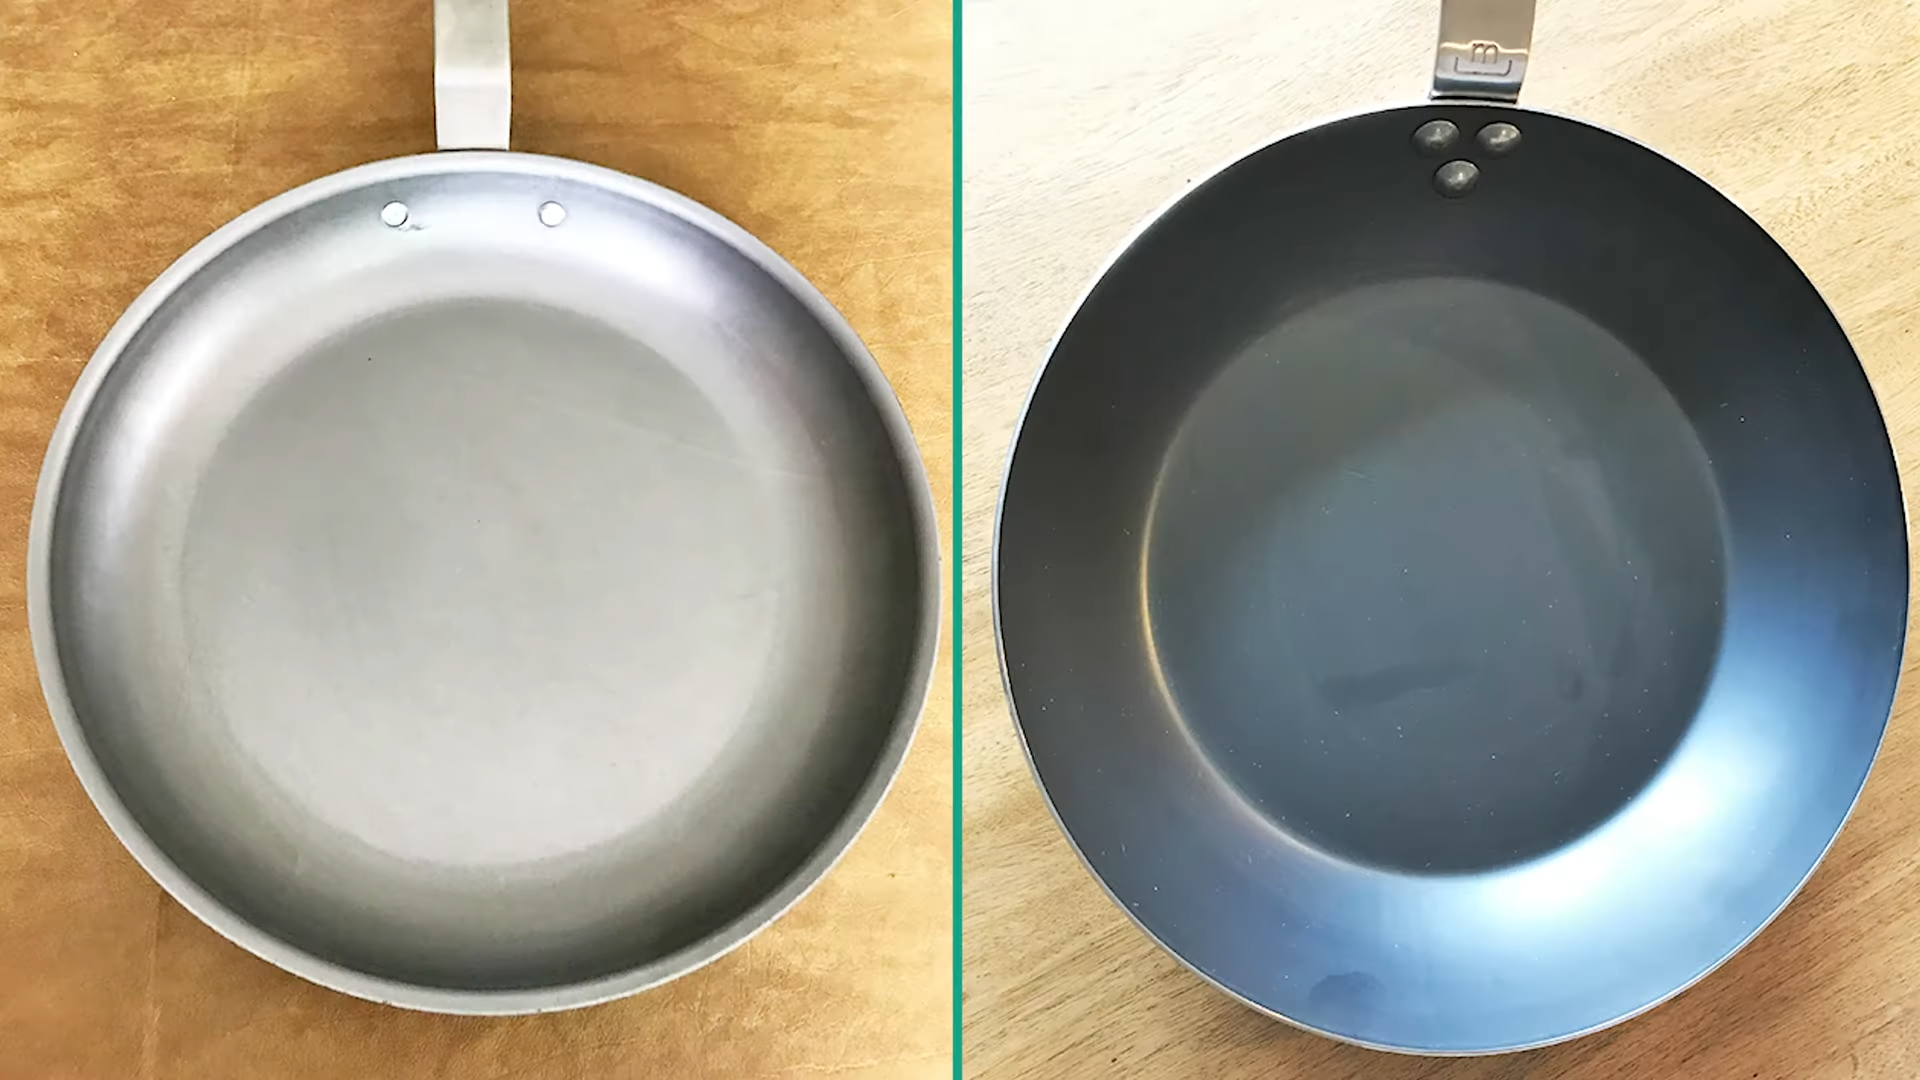 Carbon Steel vs. Stainless Steel Pan